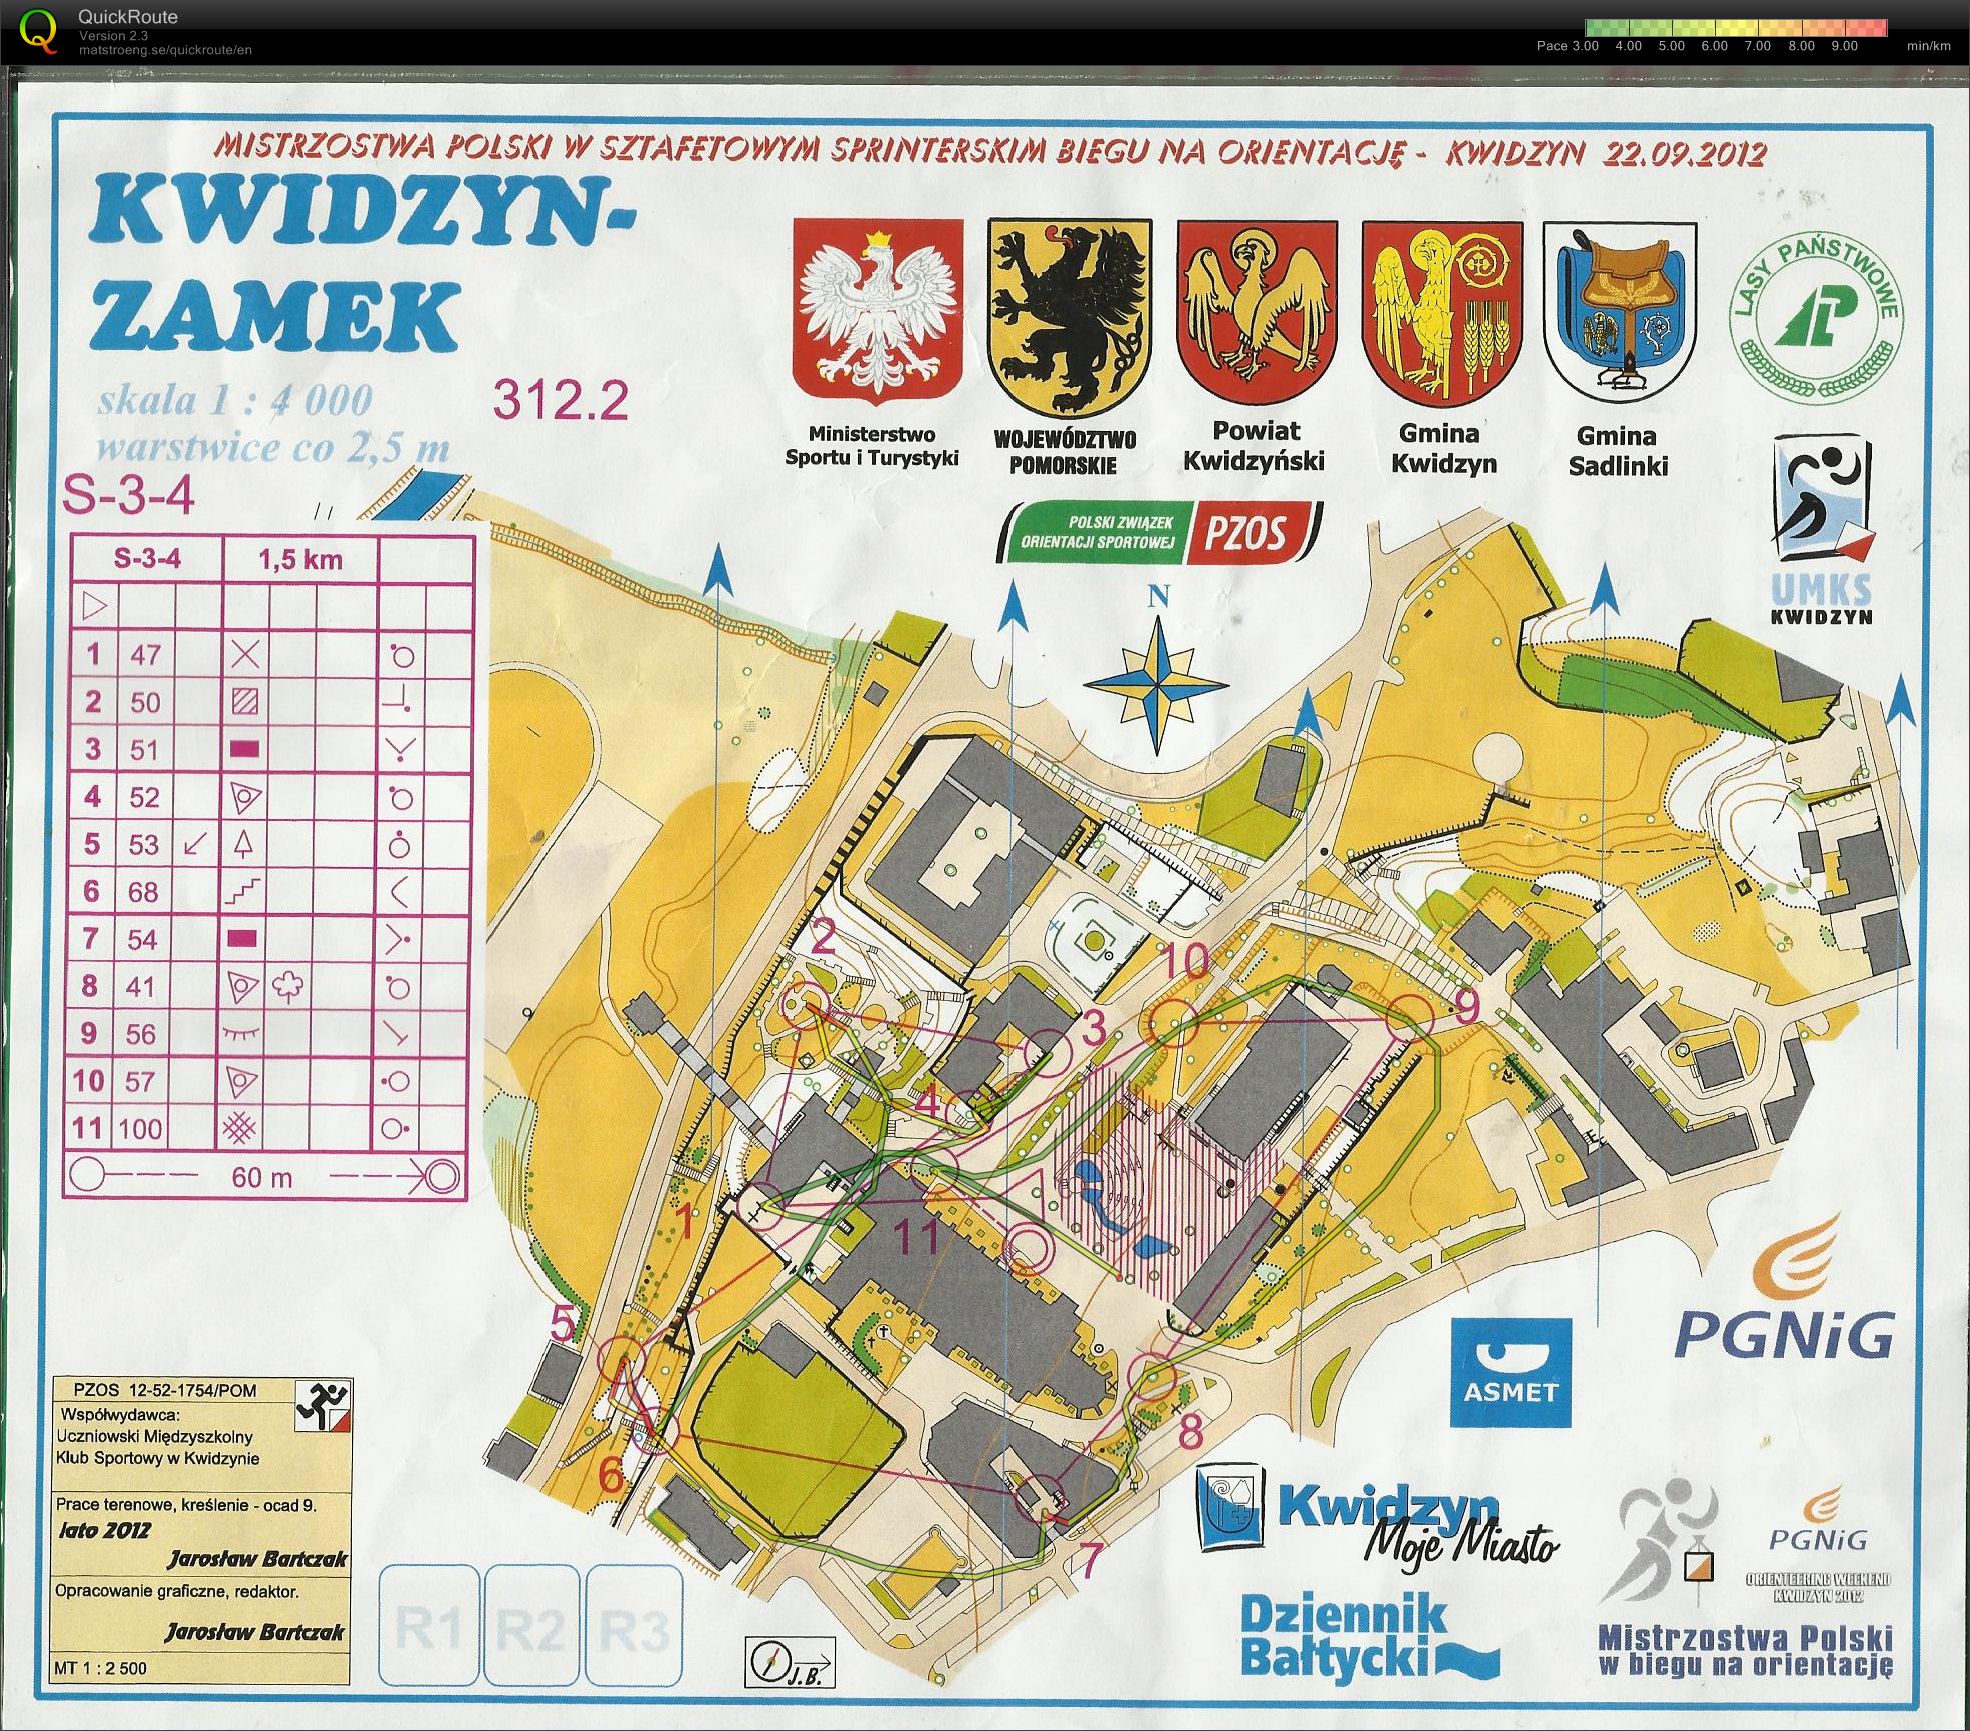 Z150 - Mistrzostwa Polski - sztafety sprinterskie (22/09/2012)